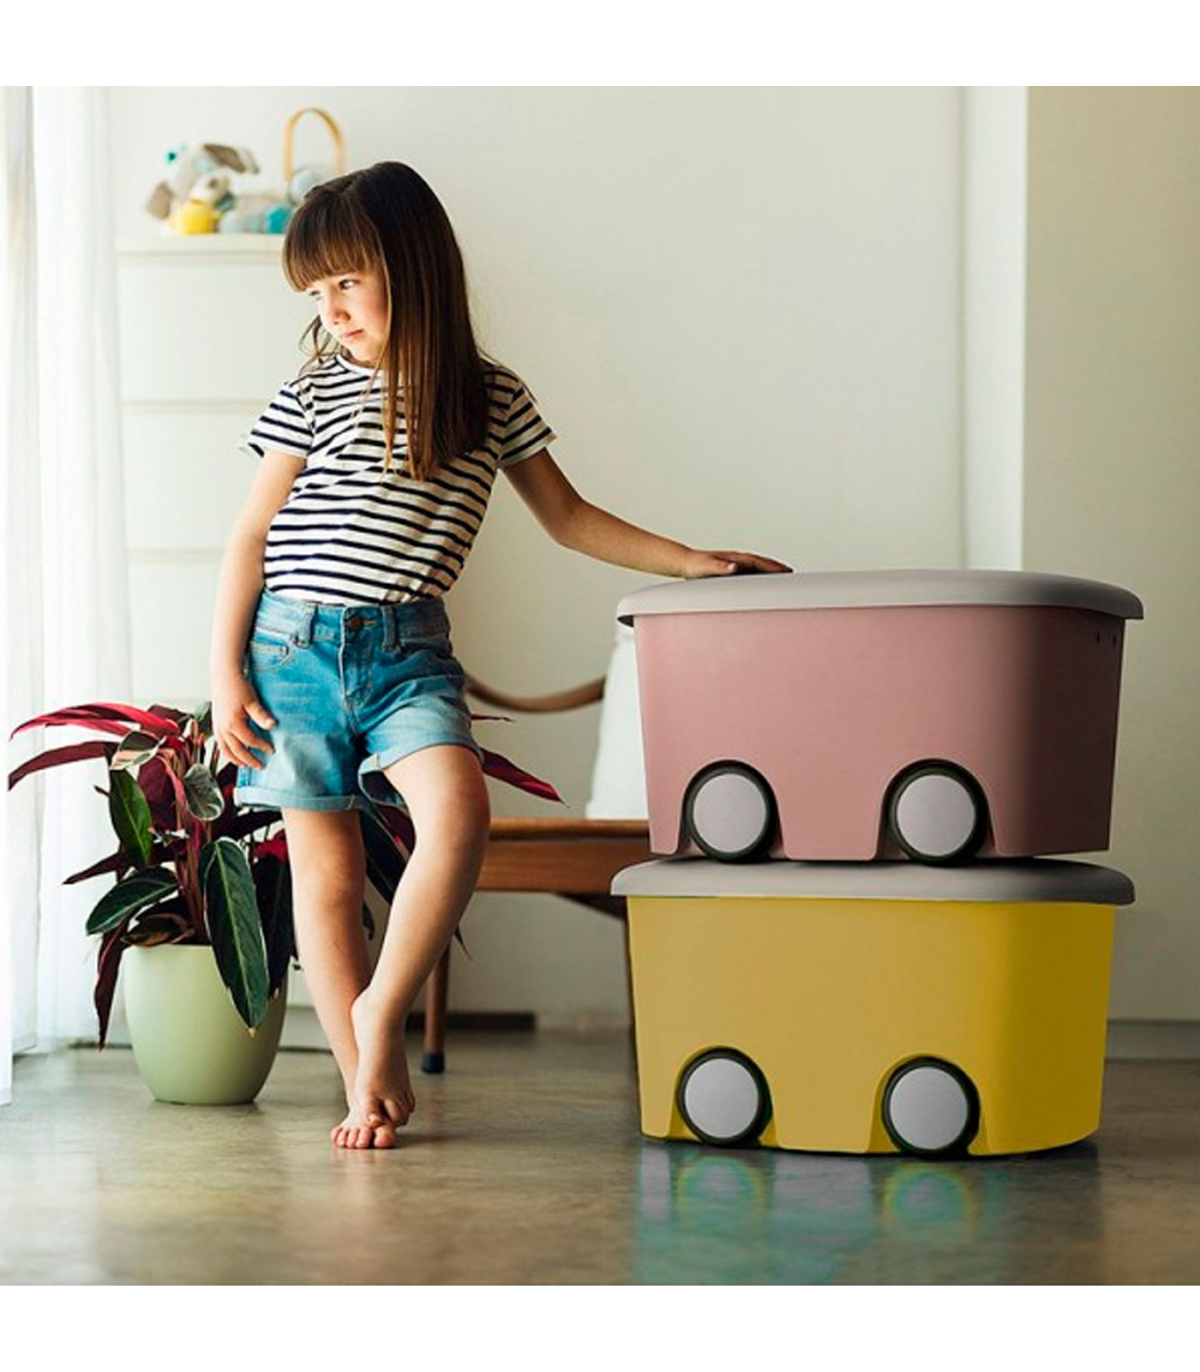 Tradineur - Caja de almacenamiento infantil con ruedas y tapa, plástico,  contenedor, almacenaje juguetes, libros, ropa, mantas